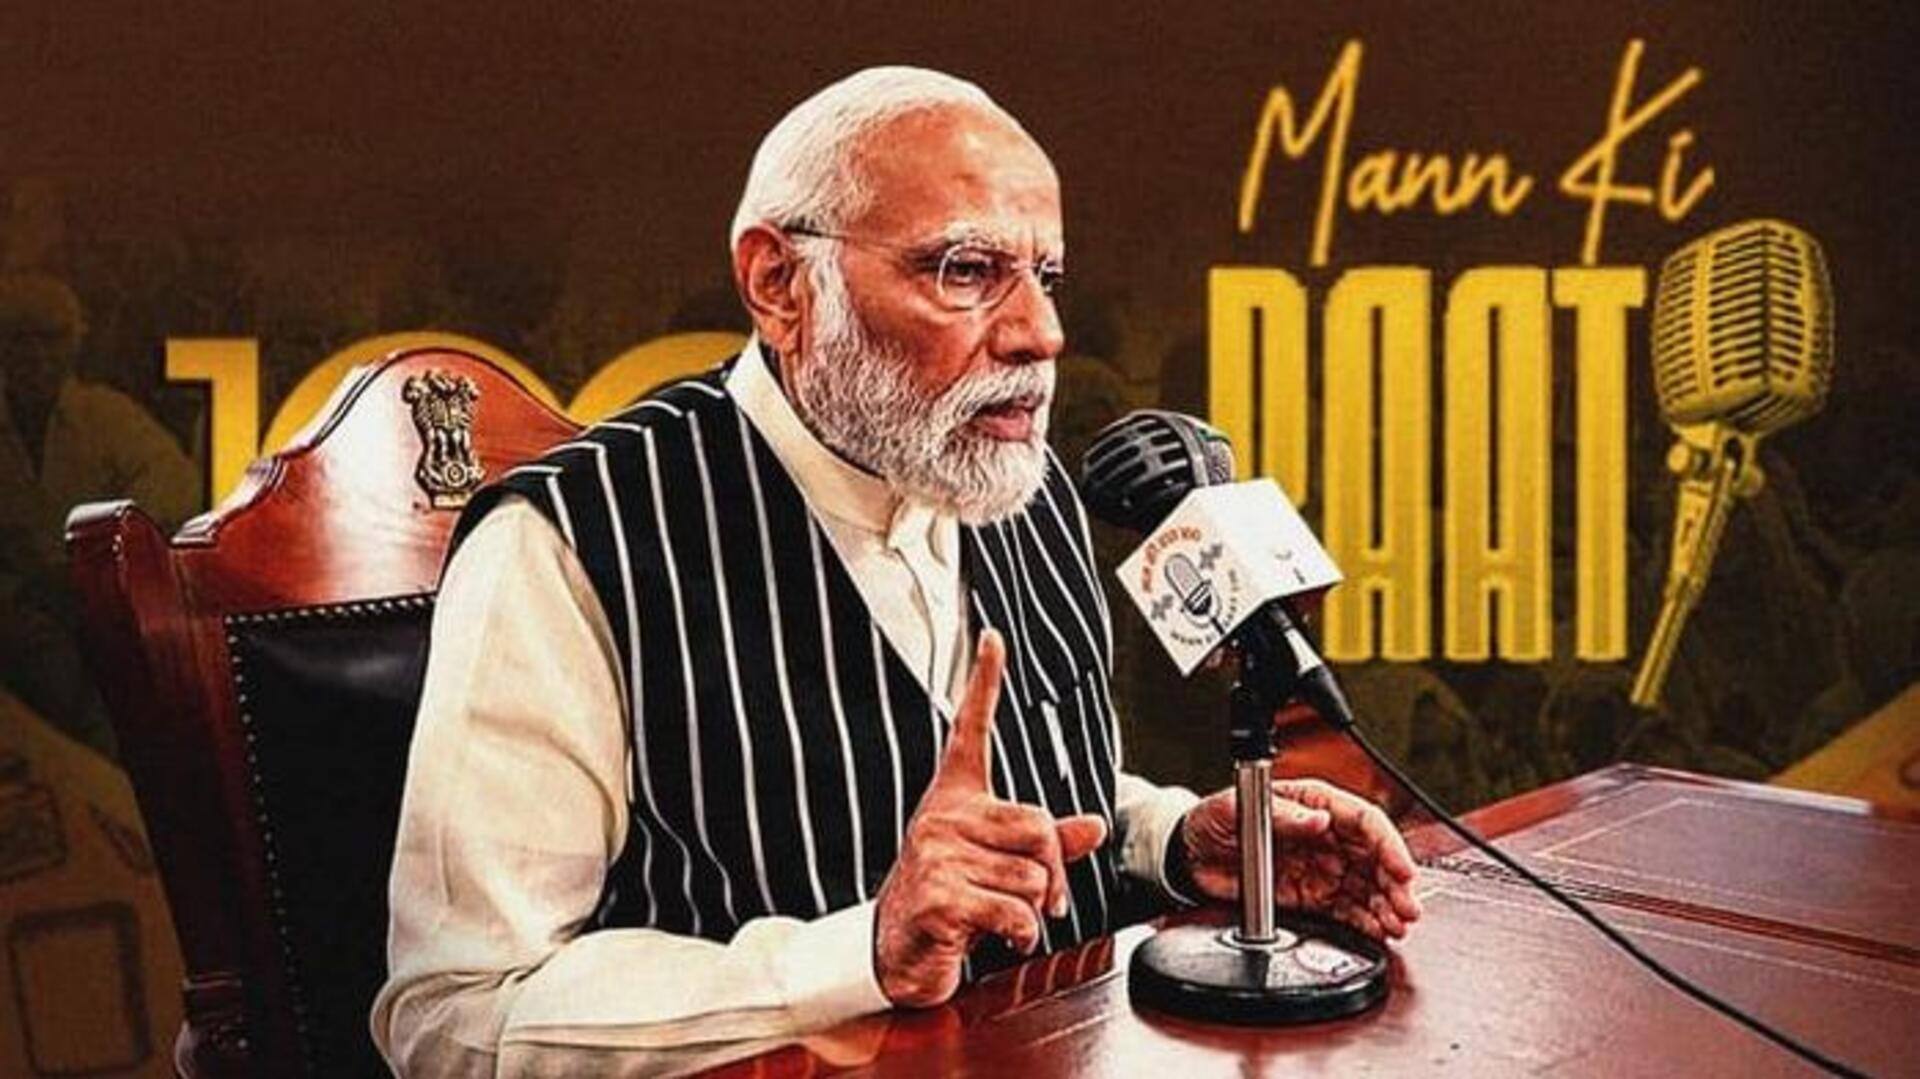 प्रधानमंत्री नरेंद्र मोदी के 'मन की बात' कार्यक्रम का हिस्ट्री चैनल पर होगा प्रसारण 